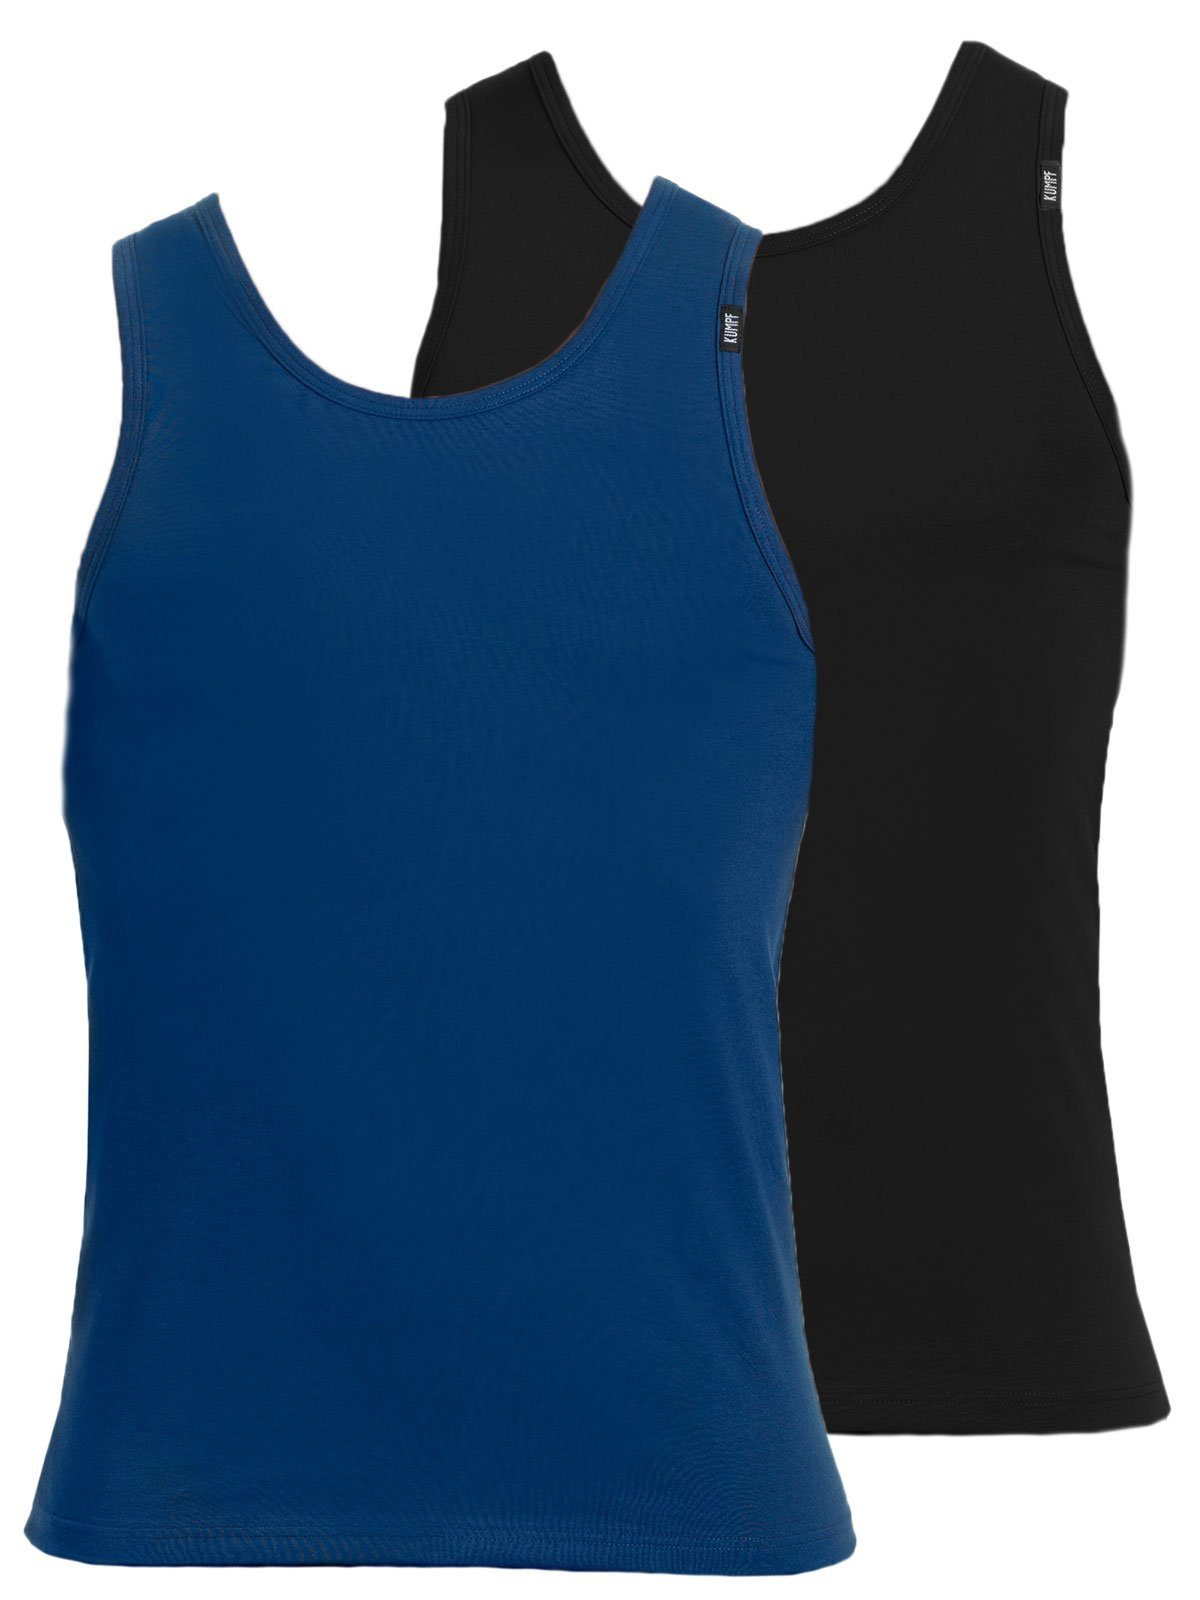 KUMPF Achselhemd 2er Sparpack Herren Unterhemd Bio Cotton (Spar-Set, 2-St) hohe Markenqualität darkblue schwarz